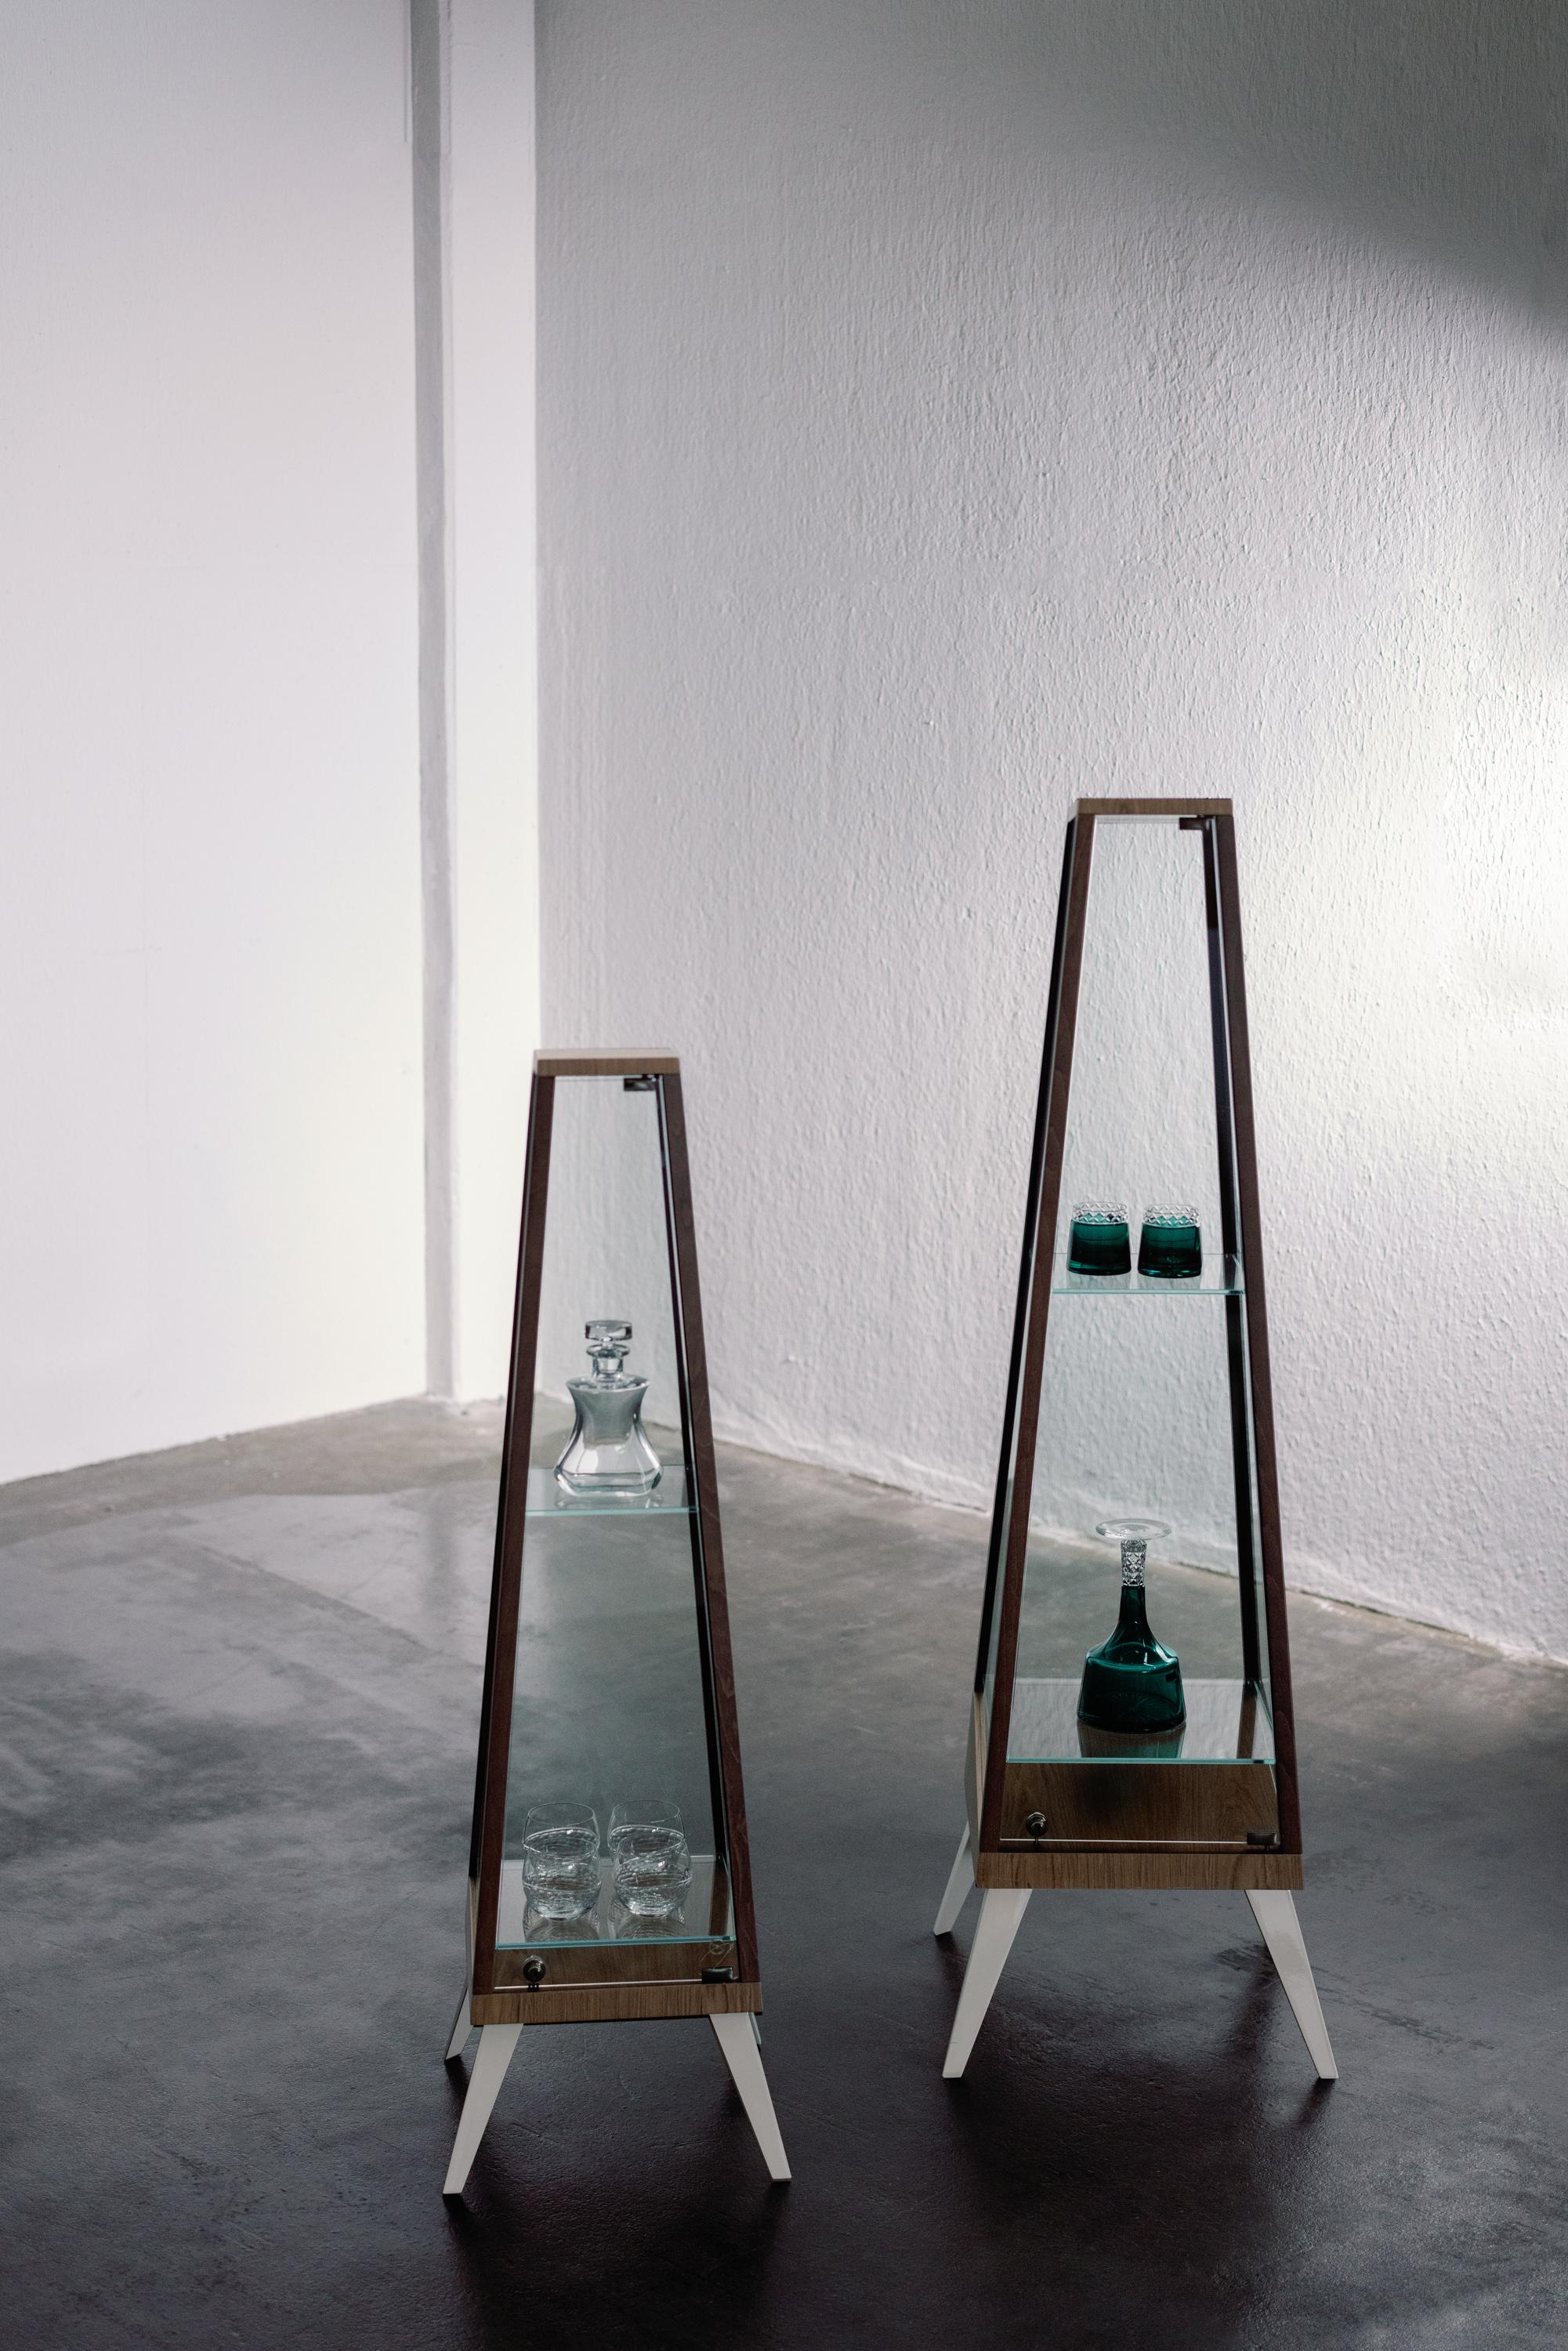 Armoire Letizia, collection moderne, fabriquée à la main au Portugal - Europe par GF Modern.

Le meuble Letizia représente un concept où l'élégance et la praticité vont de pair. Le verre ultra clair révèle les pièces décoratives intérieures que vous